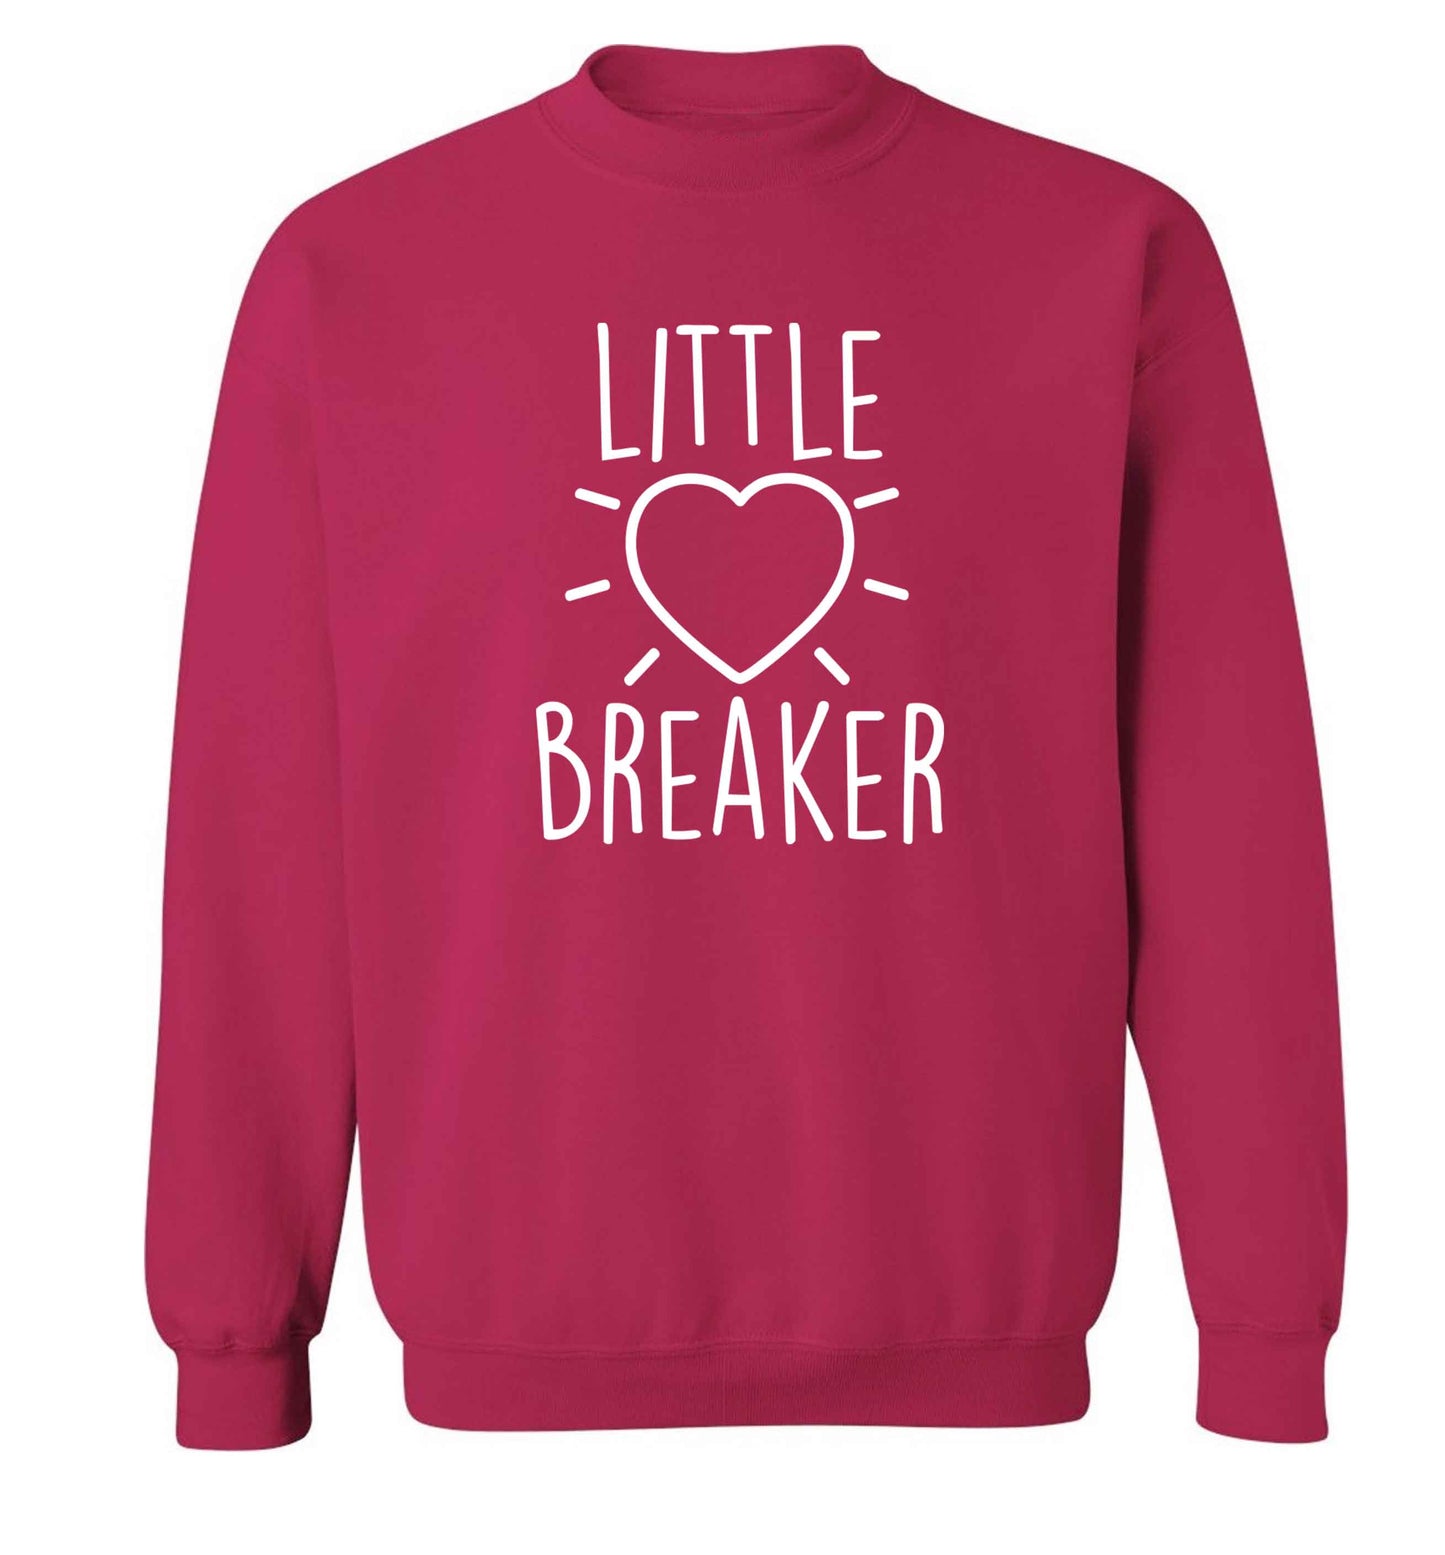 Little heartbreaker adult's unisex pink sweater 2XL